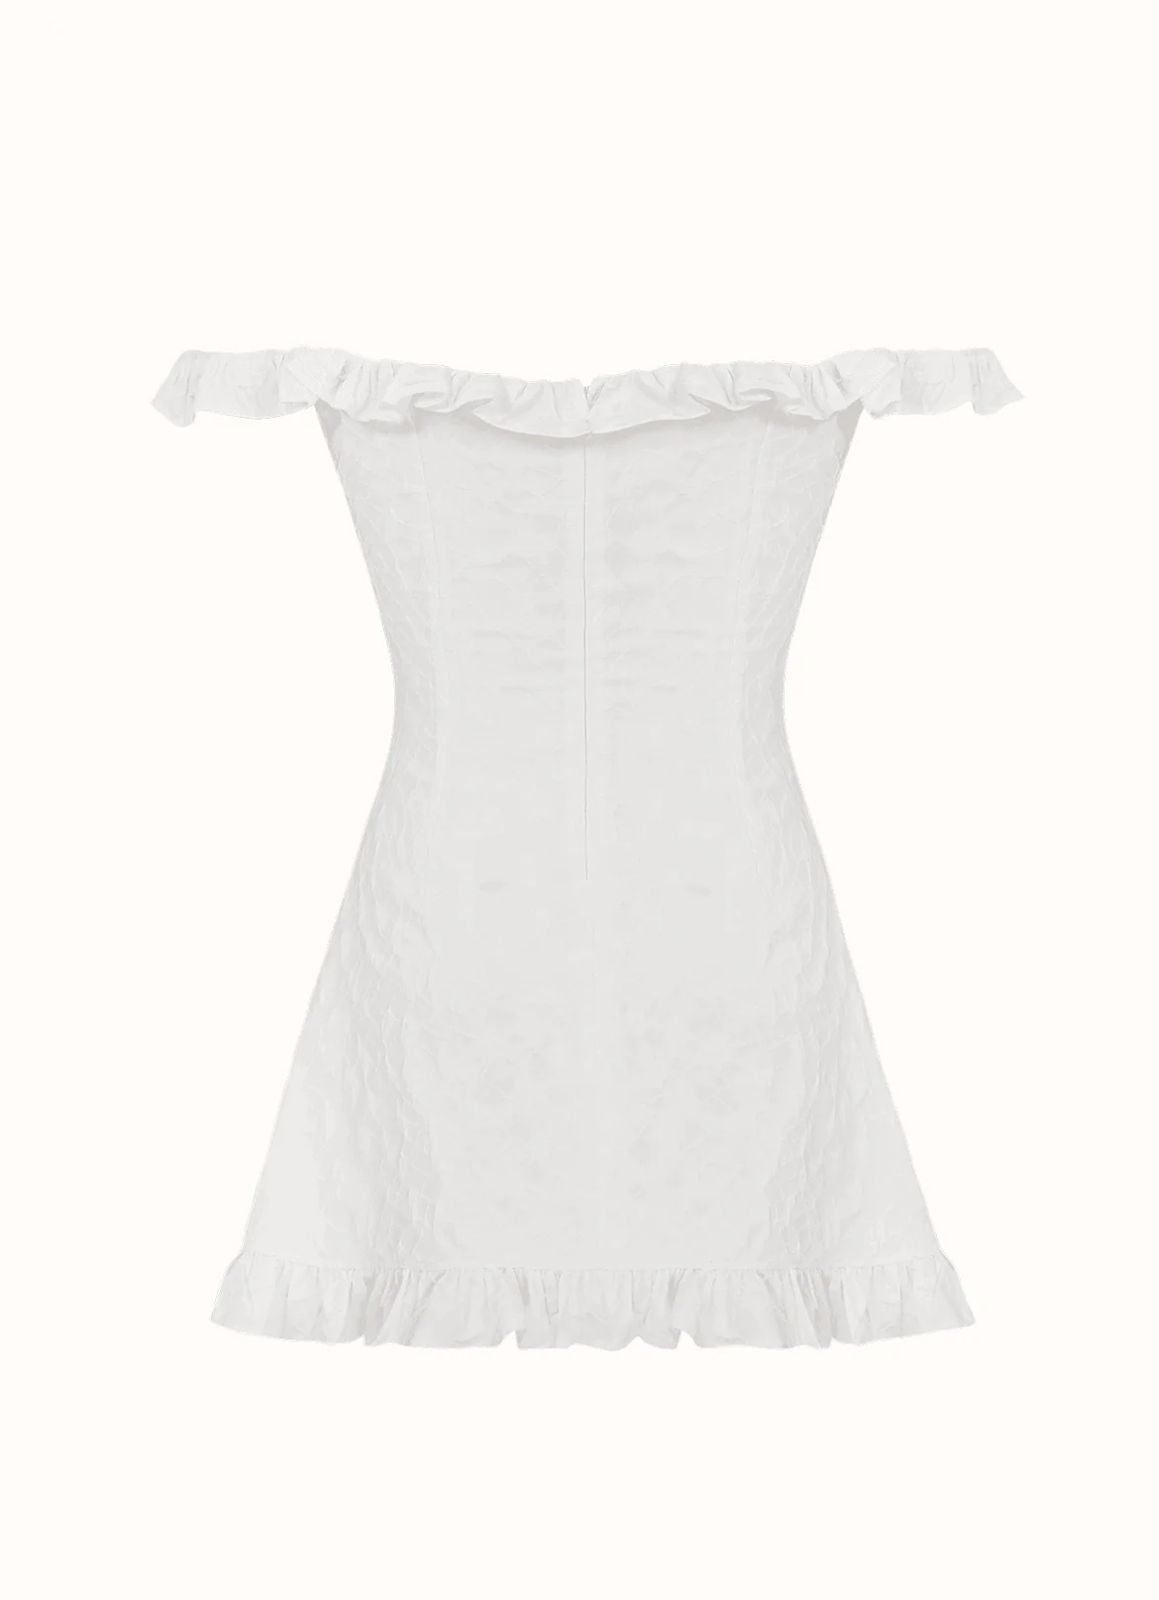 ROSE DRESS - WHITE